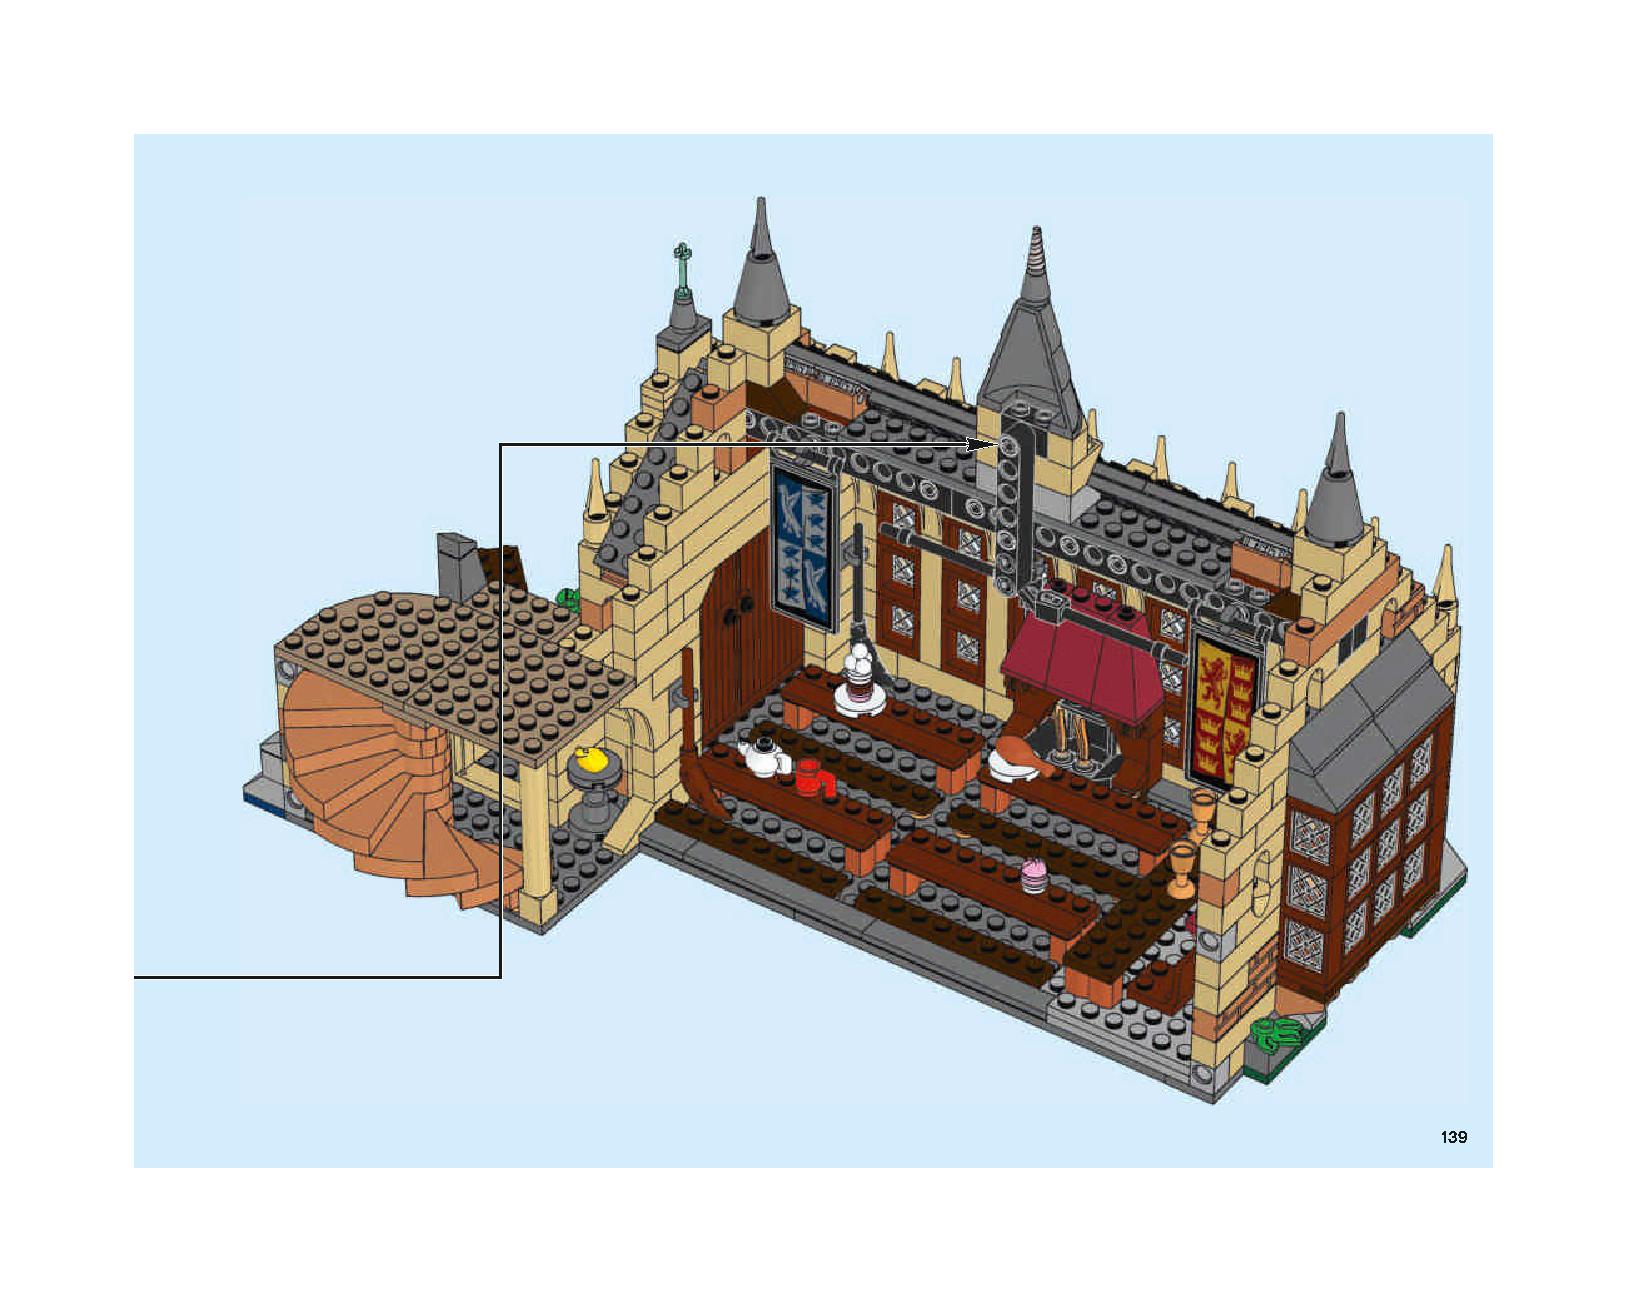 ホグワーツの大広間 75954 レゴの商品情報 レゴの説明書・組立方法 139 page